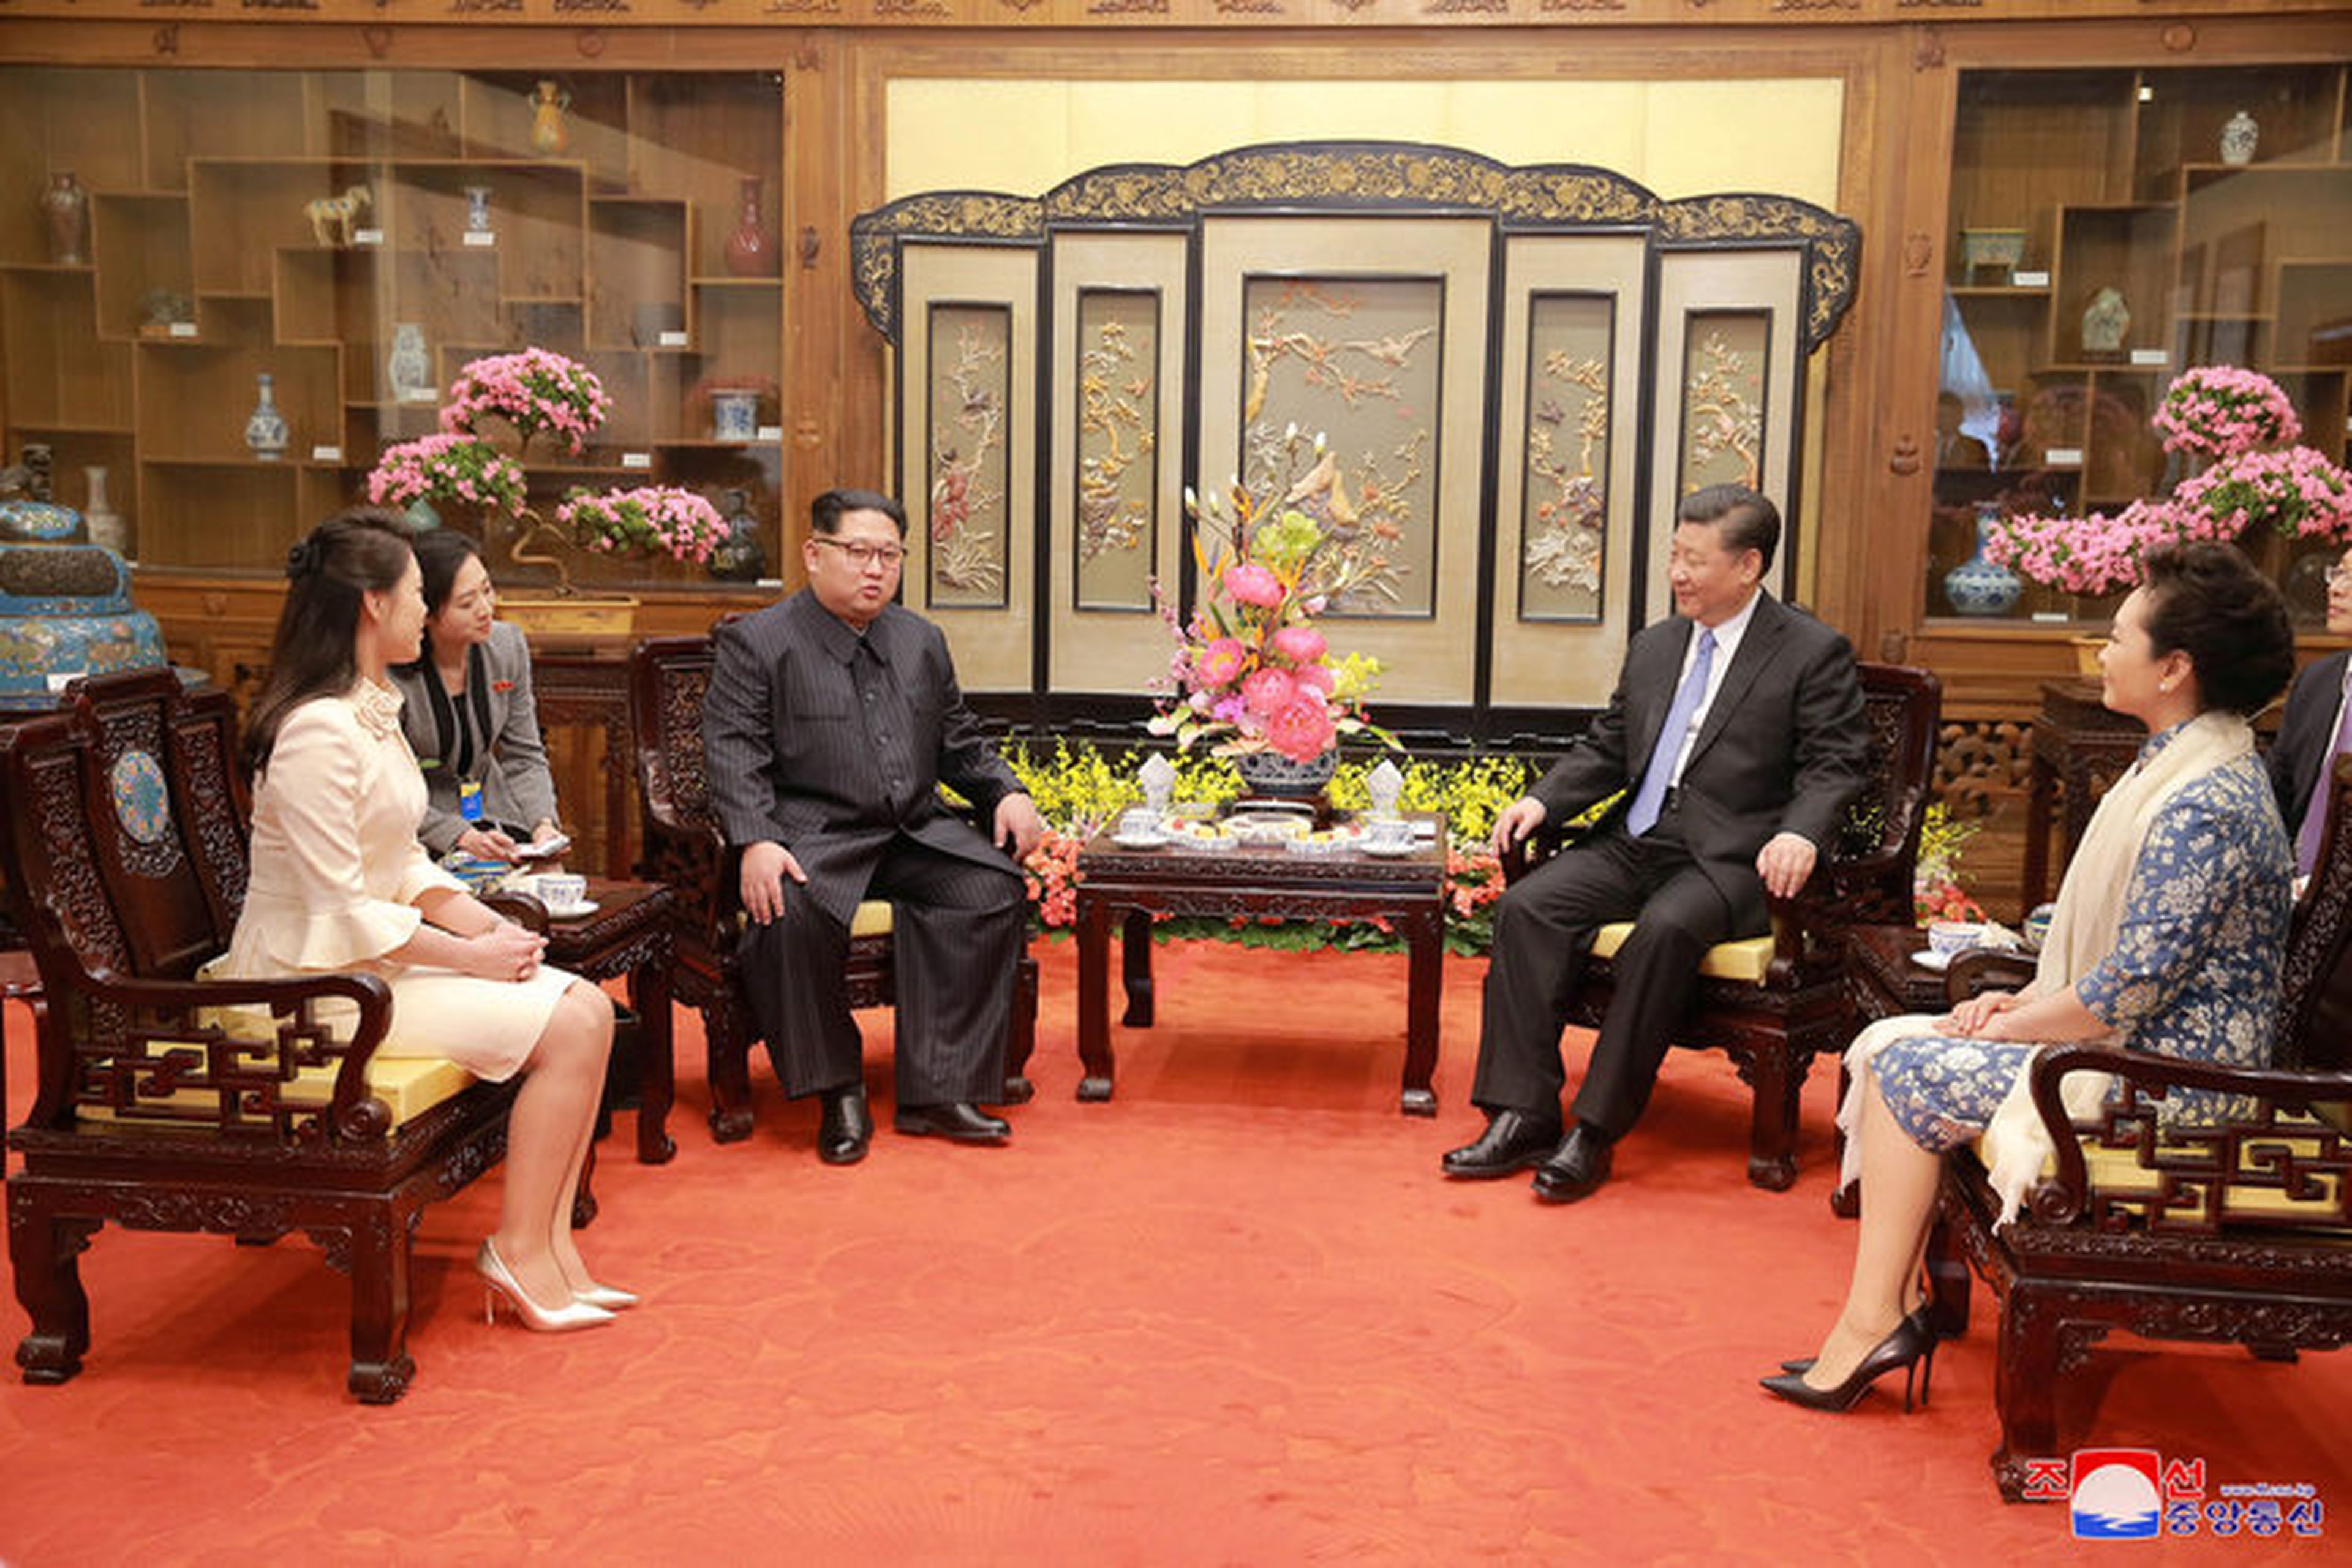 Kim y Ri se reúnen con el presidente chino, Xi Jinping, y su mujer, Peng Liyuan en Pekín, China, vistos en esta fotografía sin fecha publicada por la KCNA el 28 de marzo de 2018.